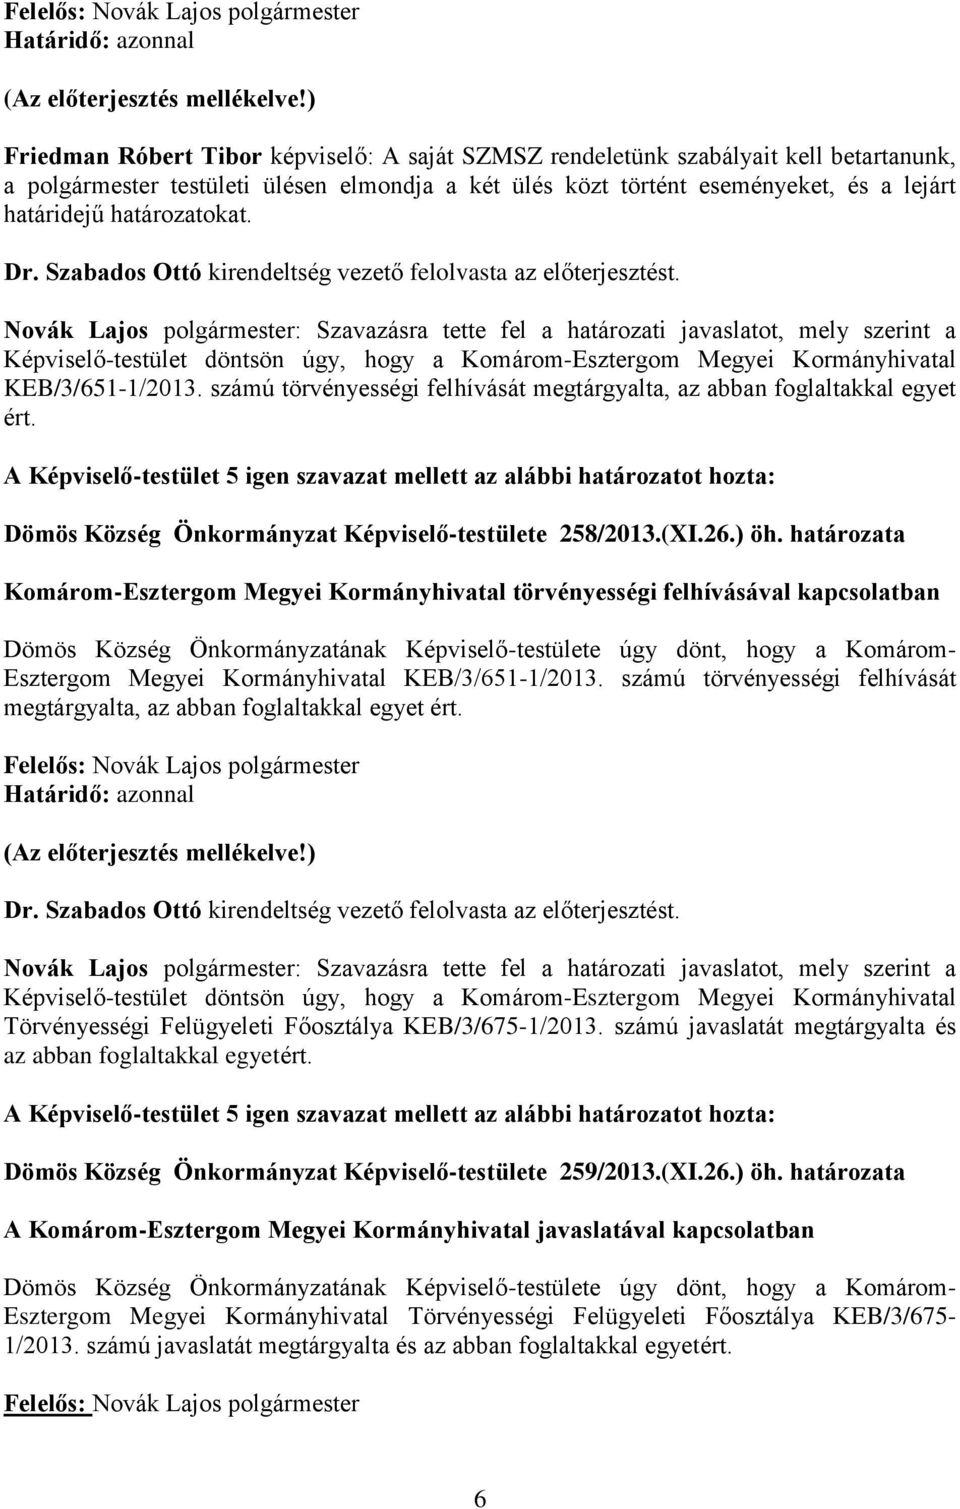 Novák Lajos polgármester: Szavazásra tette fel a határozati javaslatot, mely szerint a Képviselő-testület döntsön úgy, hogy a Komárom-Esztergom Megyei Kormányhivatal KEB/3/651-1/2013.